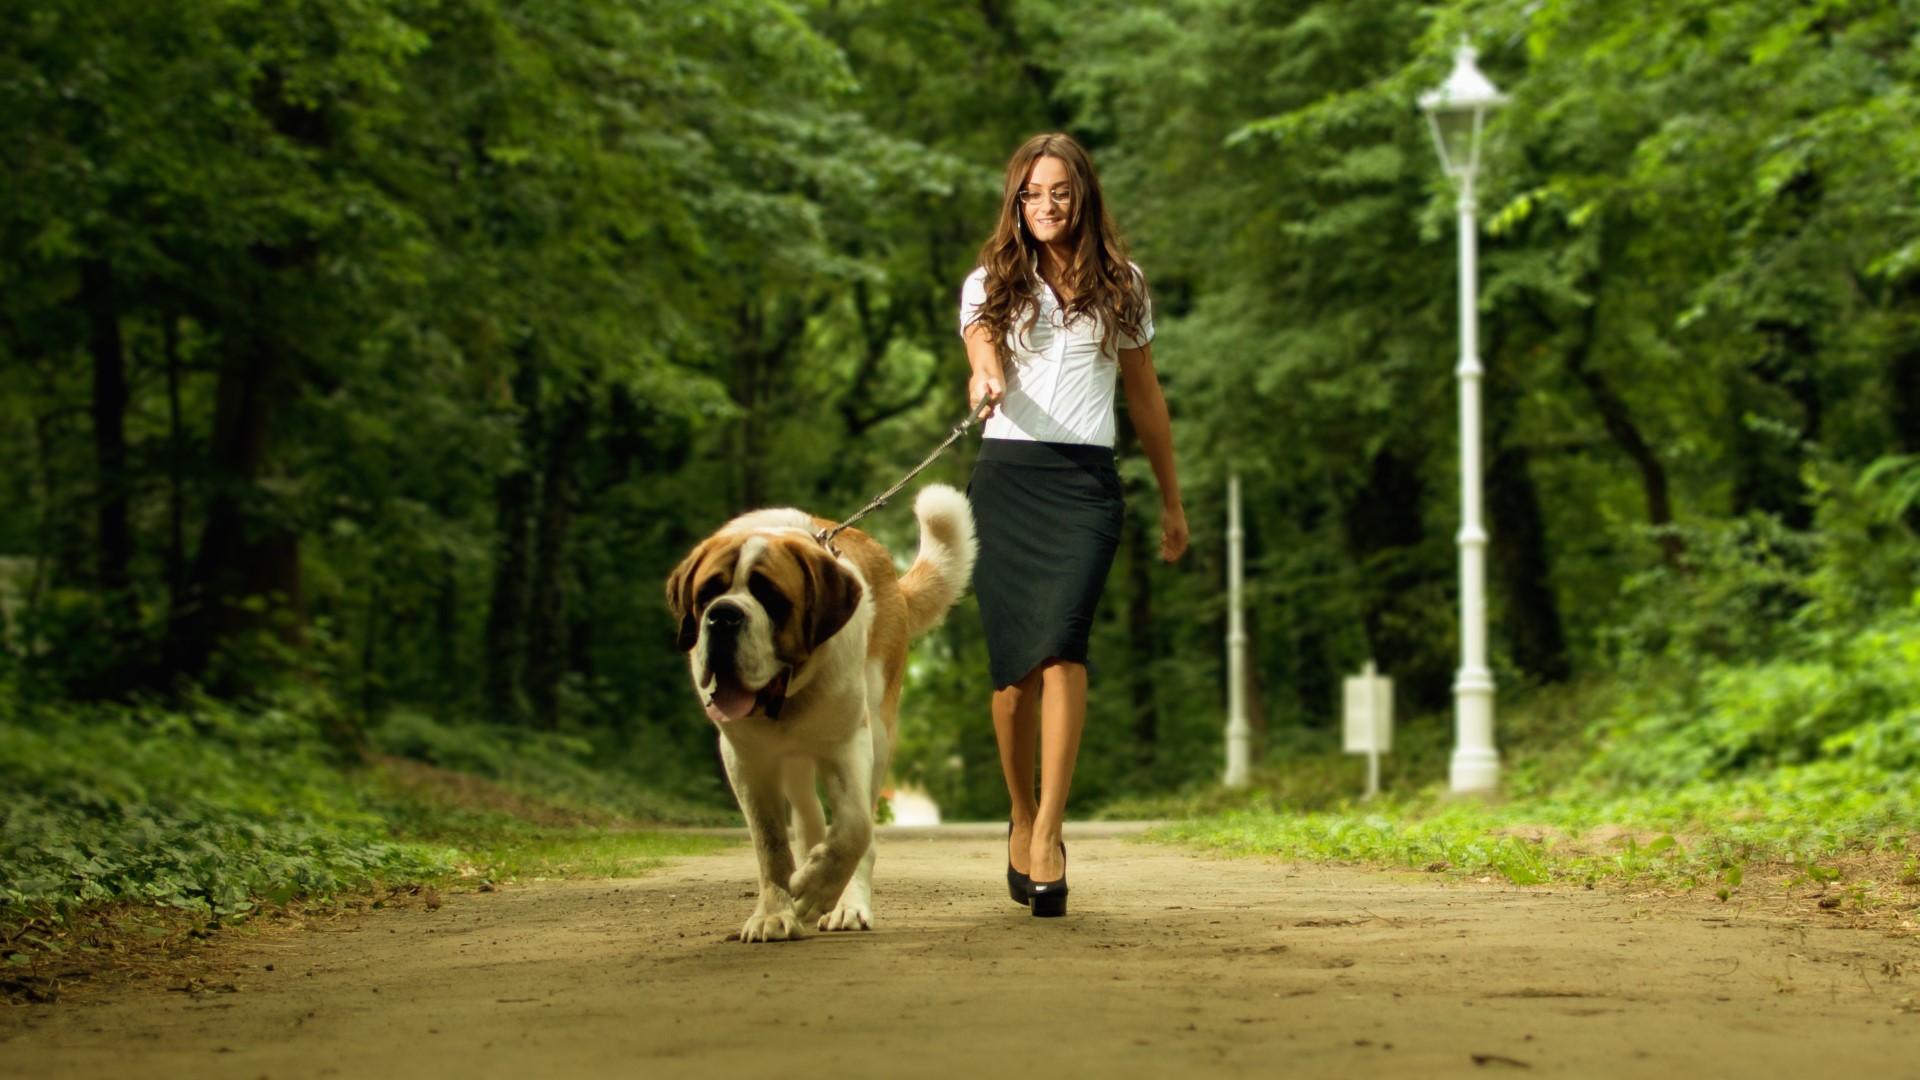 A woman in business attire walks a Saint Bernard in a park